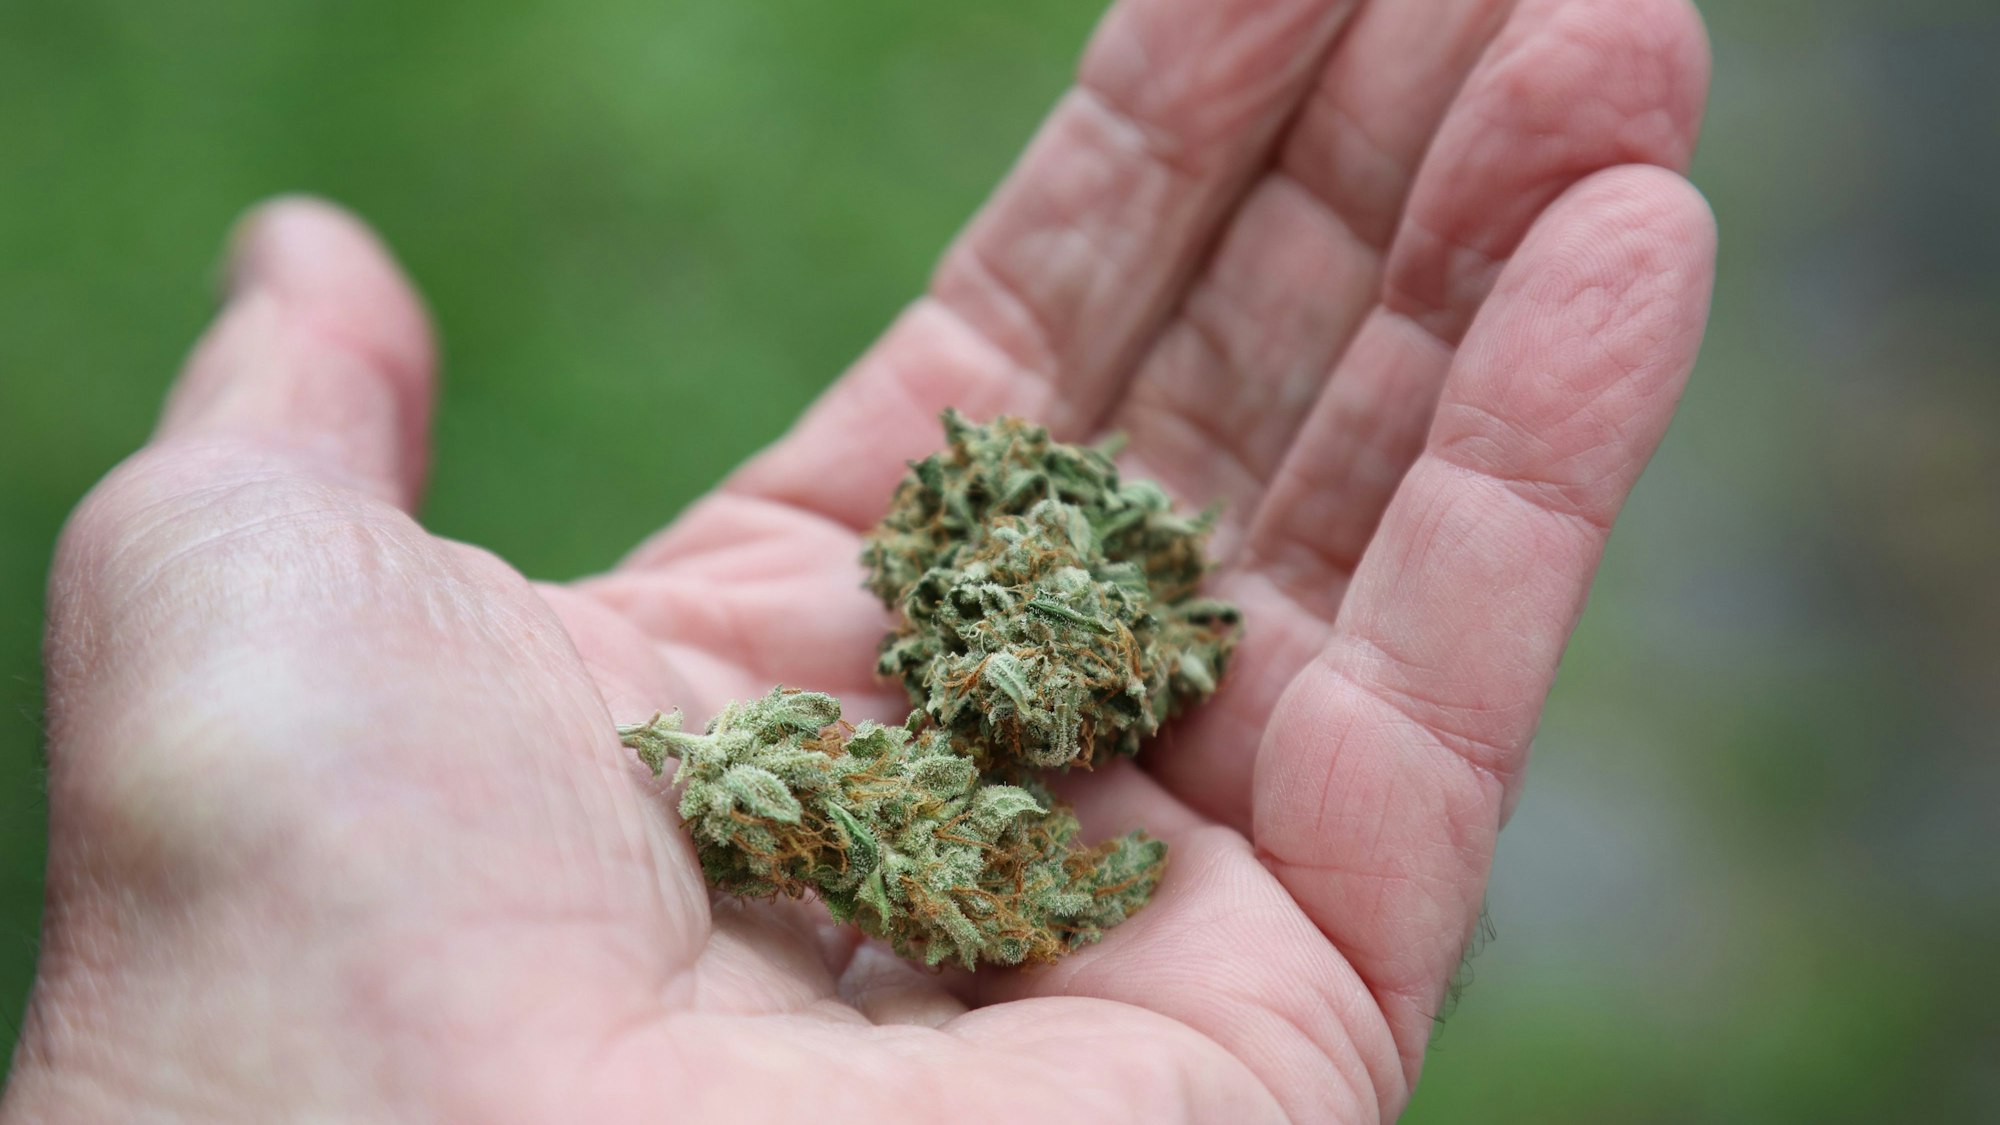 Eine Hand hält getrocknete Cannabis-Blüten.